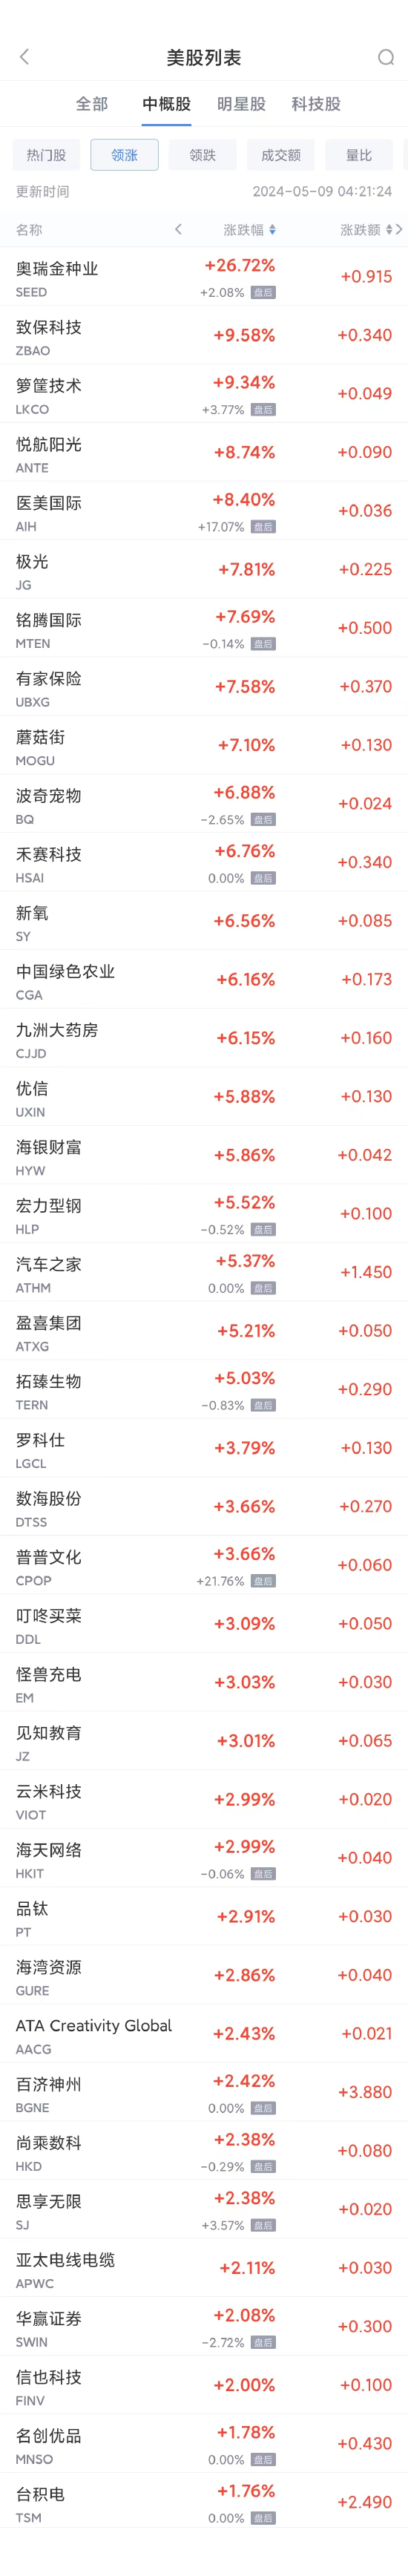 周三热门中概股涨跌不一 拼多多涨1.1%，理蔚小普跌